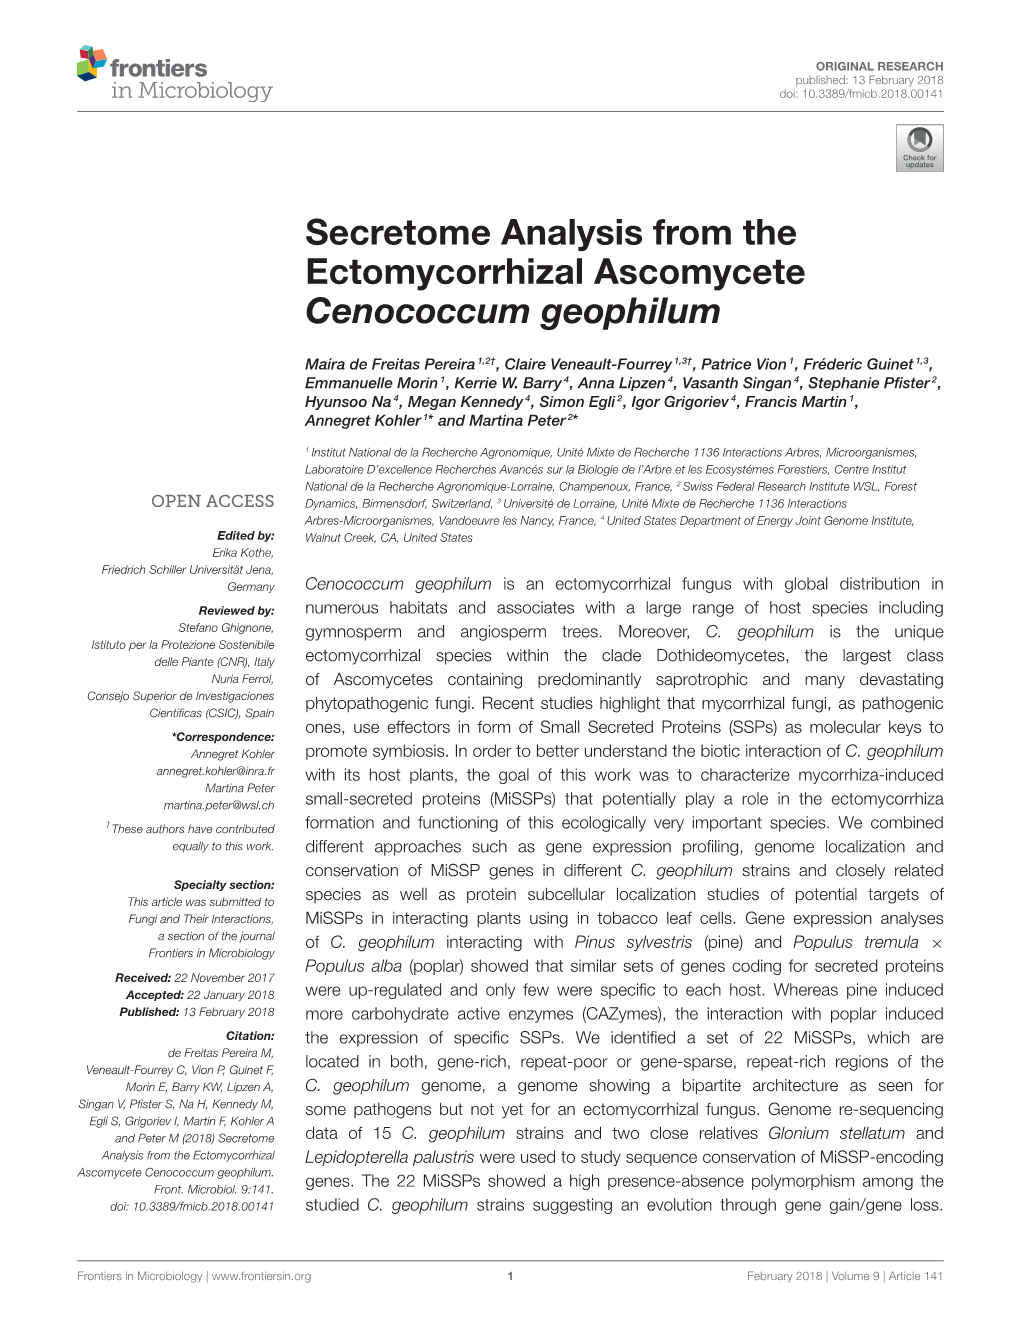 Secretome Analysis from the Ectomycorrhizal Ascomycete Cenococcum Geophilum